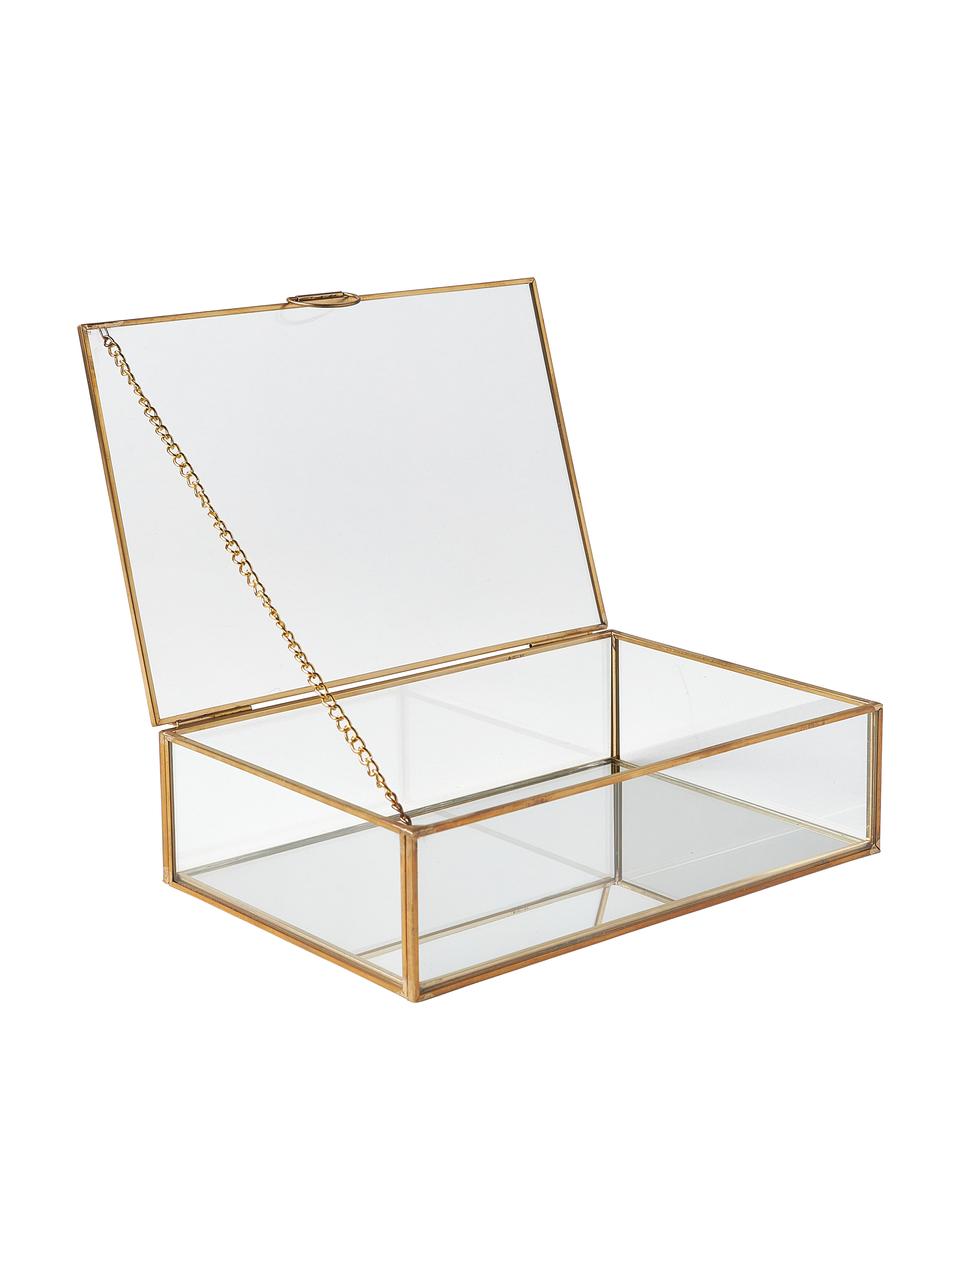 Pudełko do przechowywania ze szkła Lirio, Stelaż: metal powlekany, Transparentny, odcienie mosiądzu, S 20 x G 14 cm